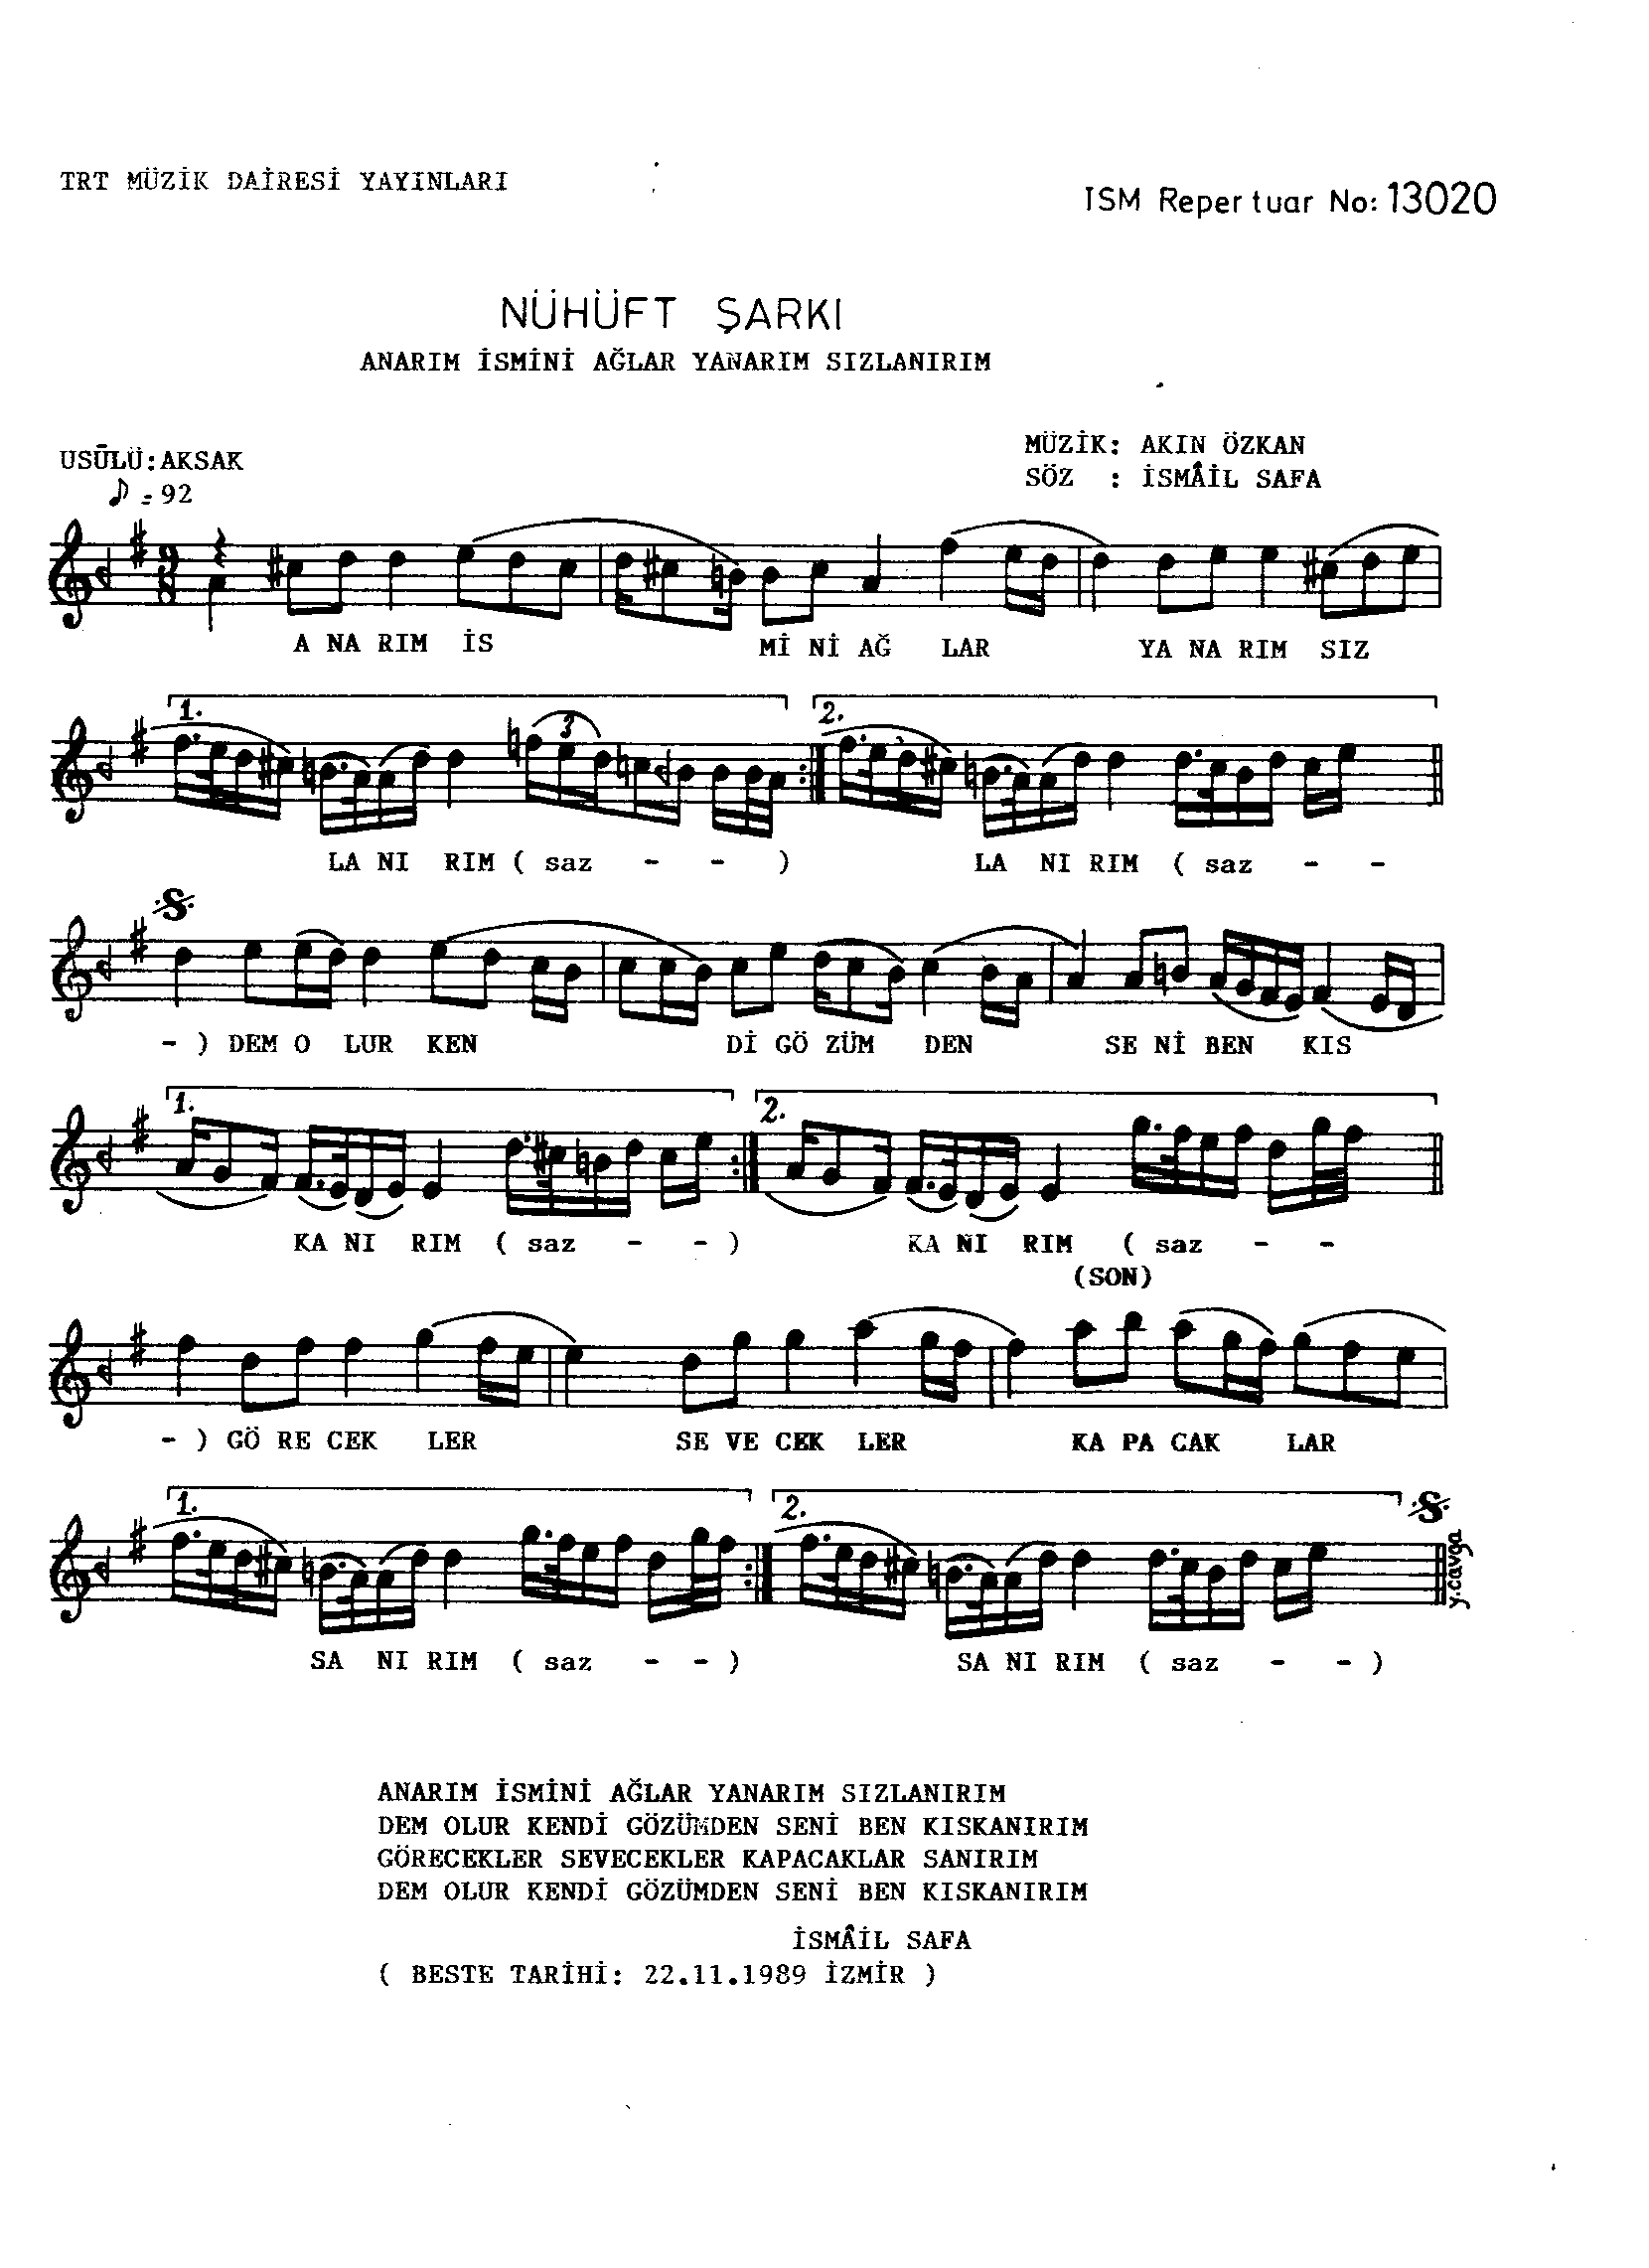 Nühüft - Şarkı - Akın Özkan - Sayfa 1